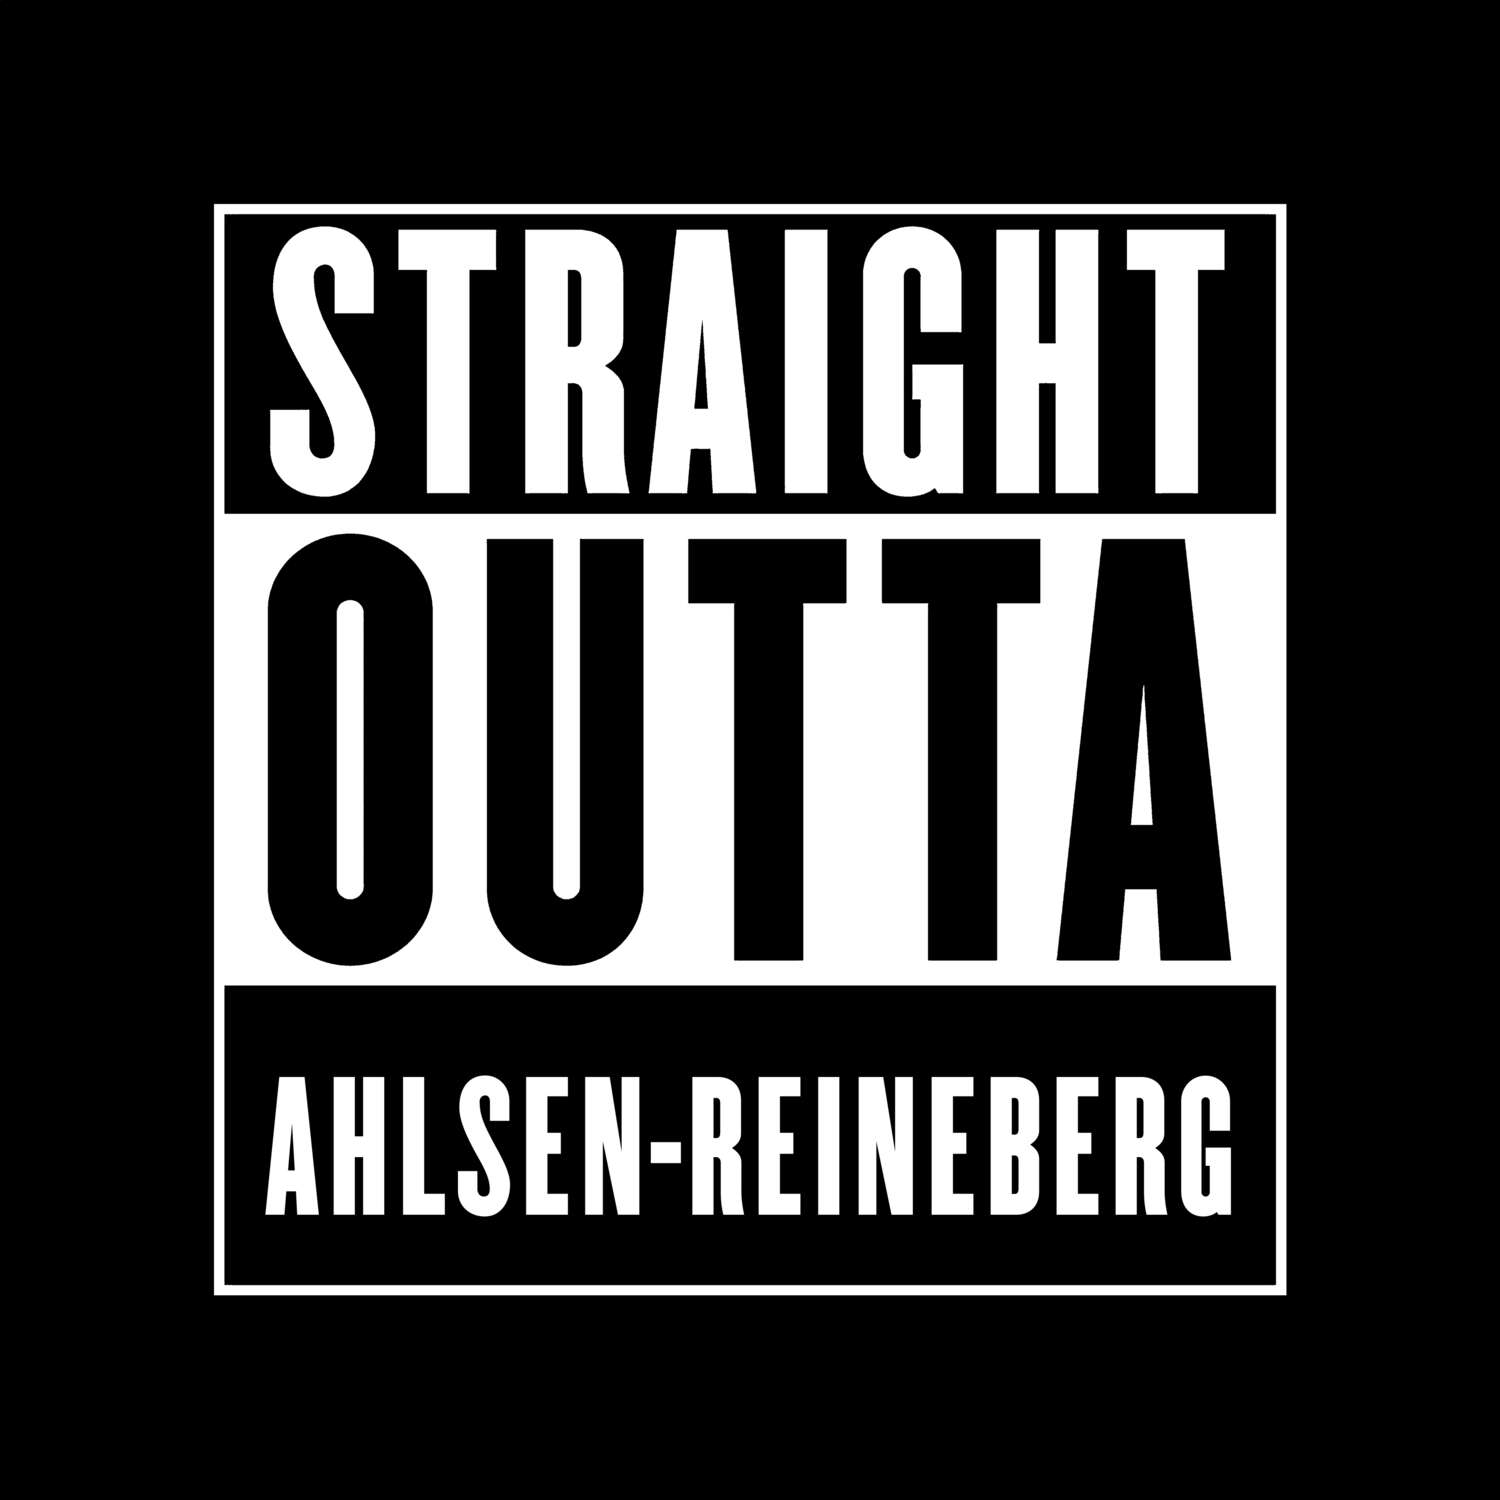 Ahlsen-Reineberg T-Shirt »Straight Outta«